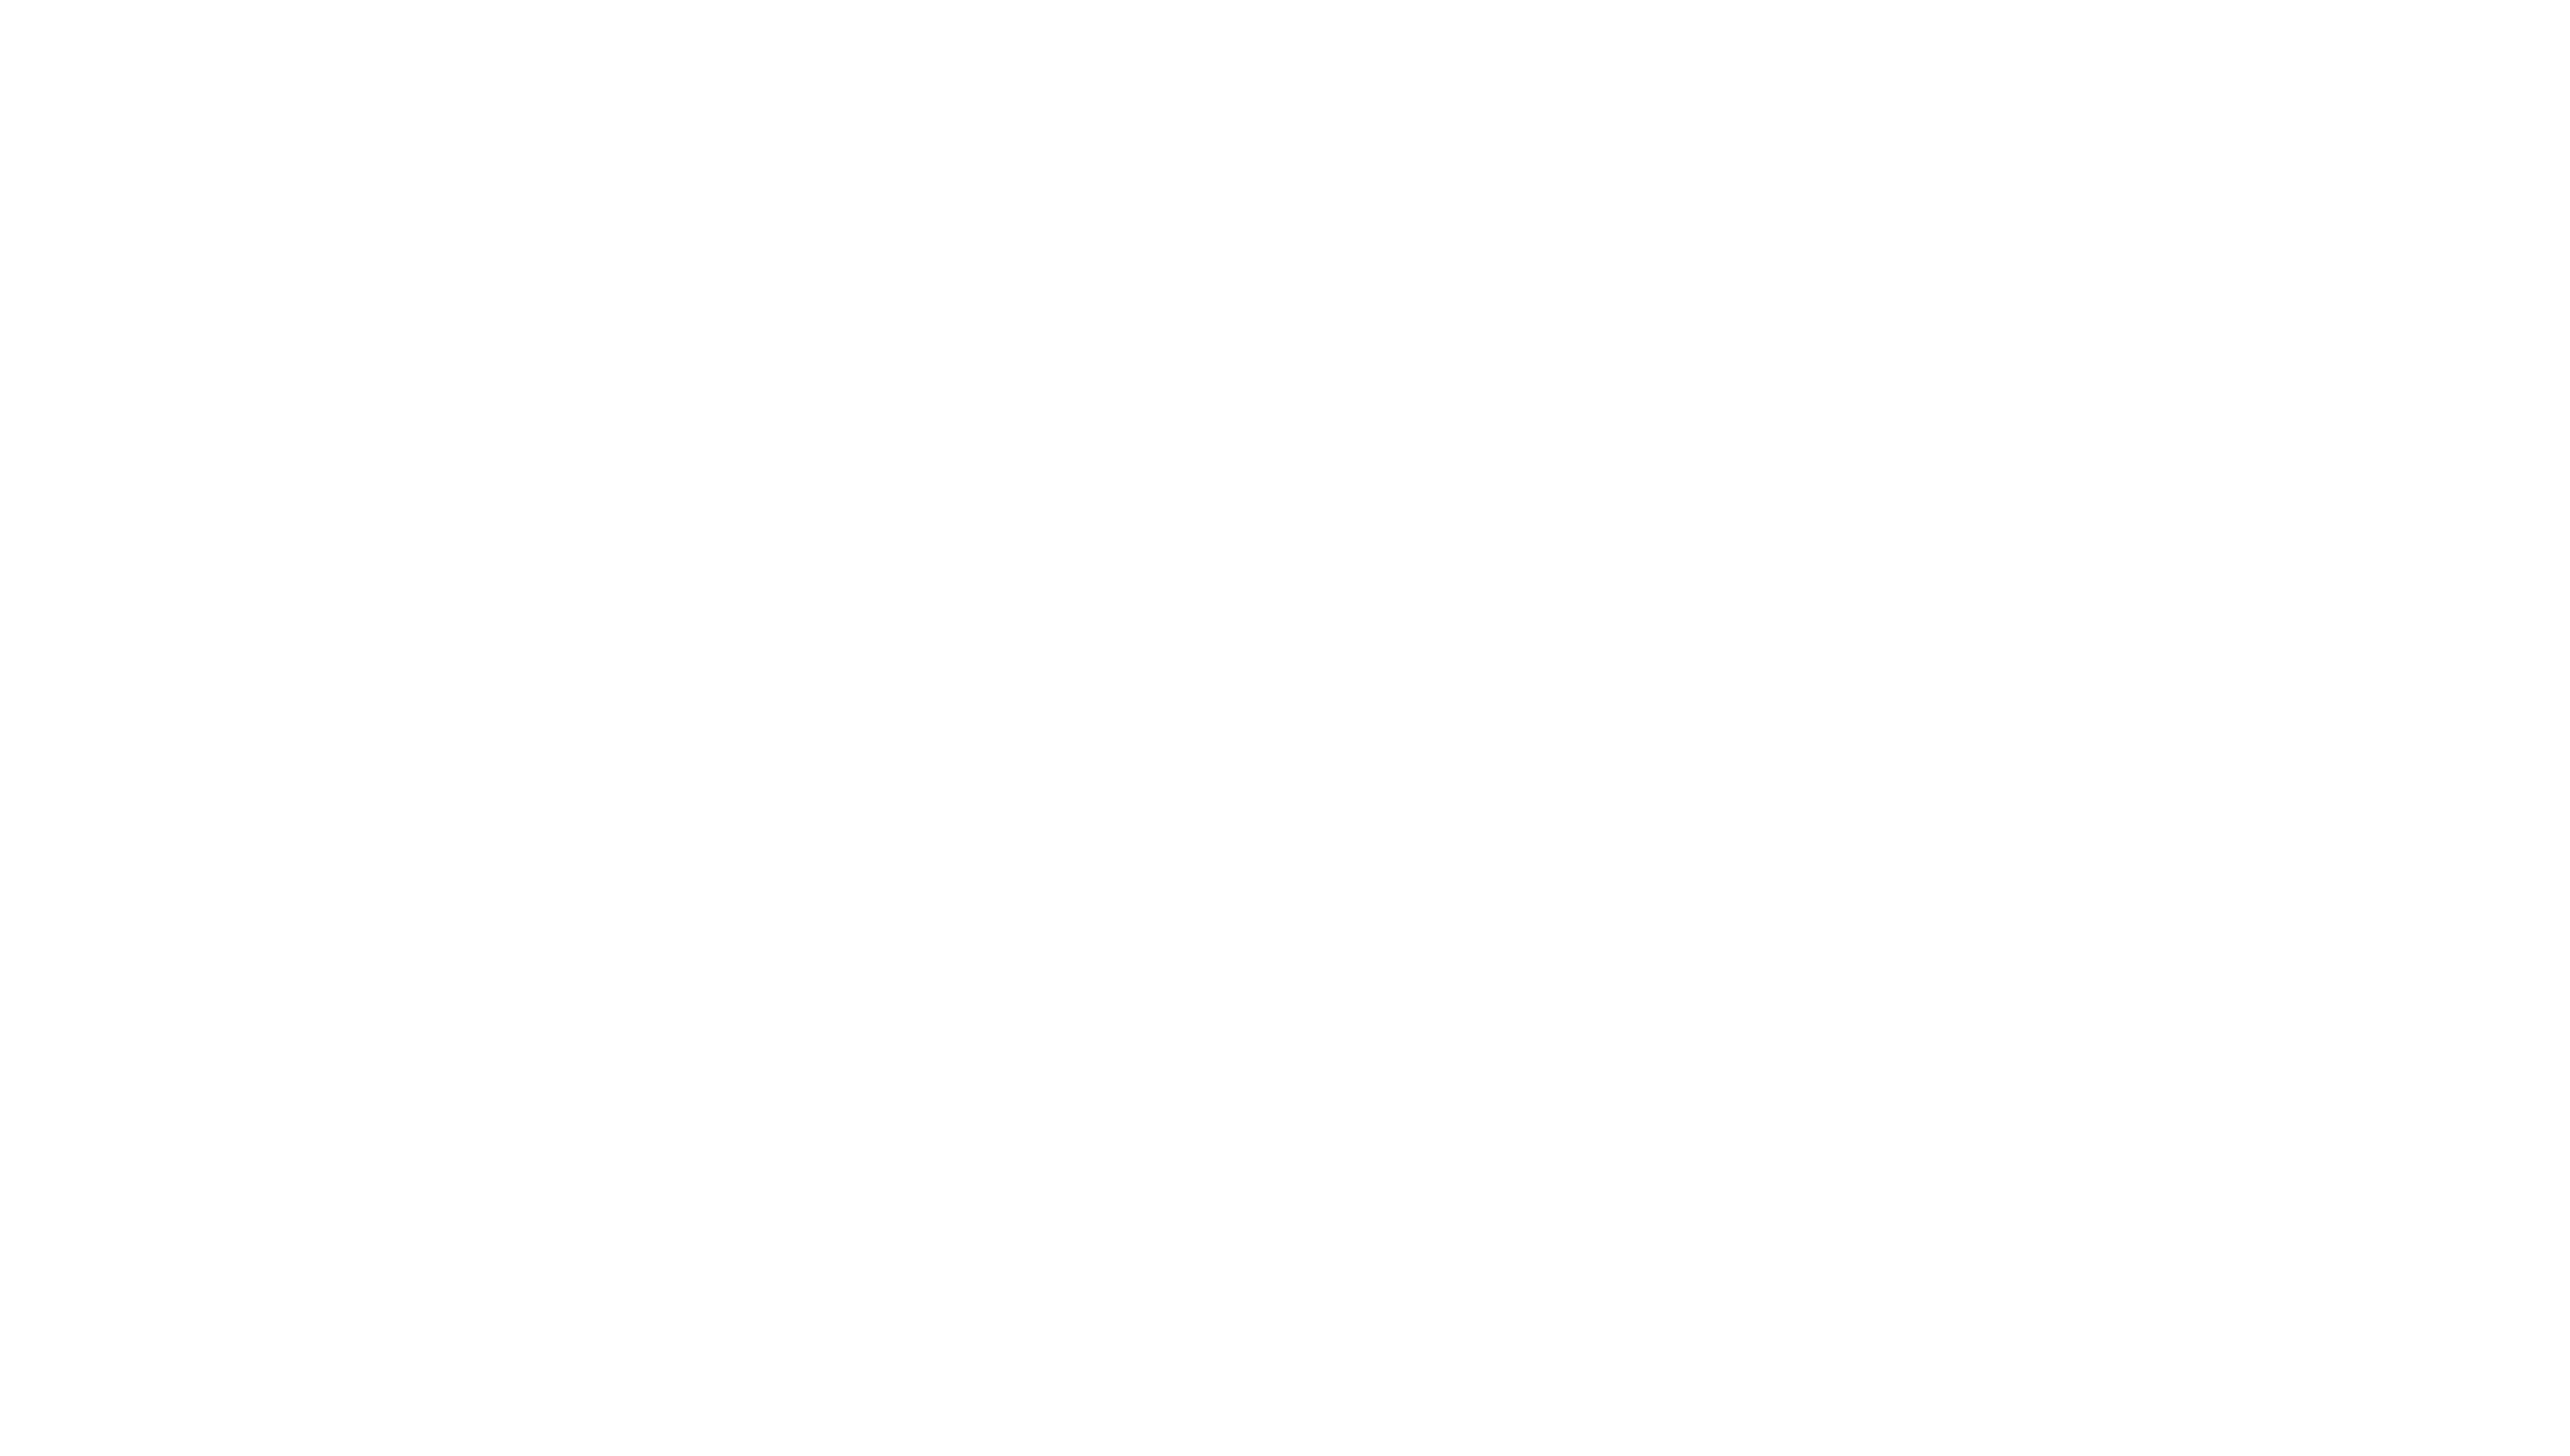 HR MEDIA DESIGN